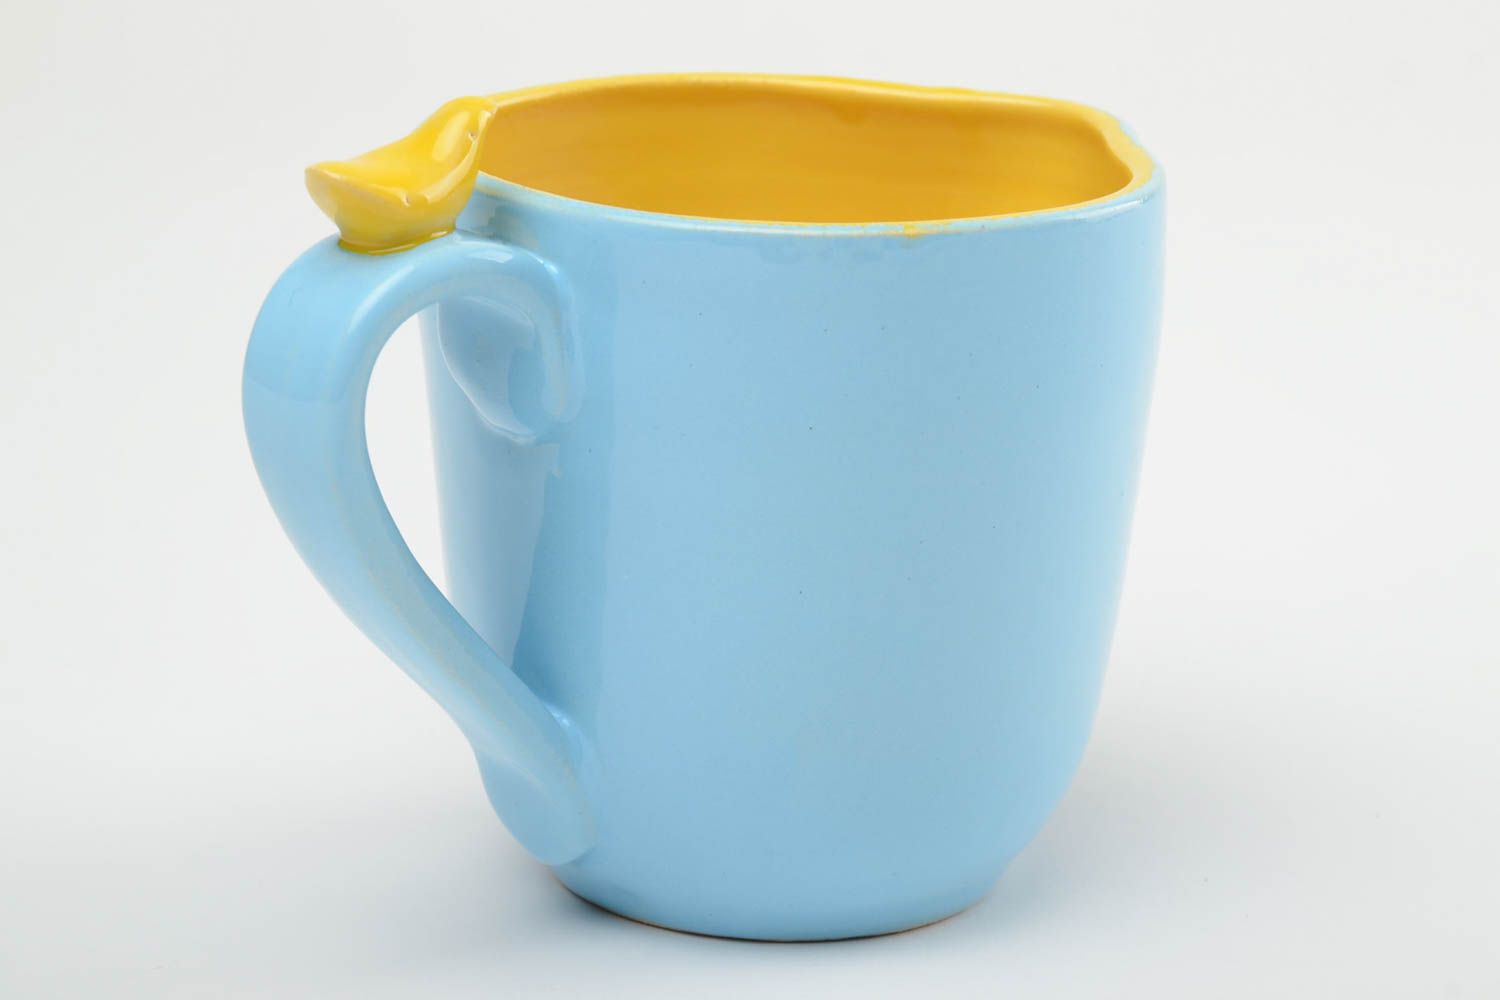 Глиняная чашка ручной работы расписанная глазурью и эмалью 400 мл желто-голубая фото 4